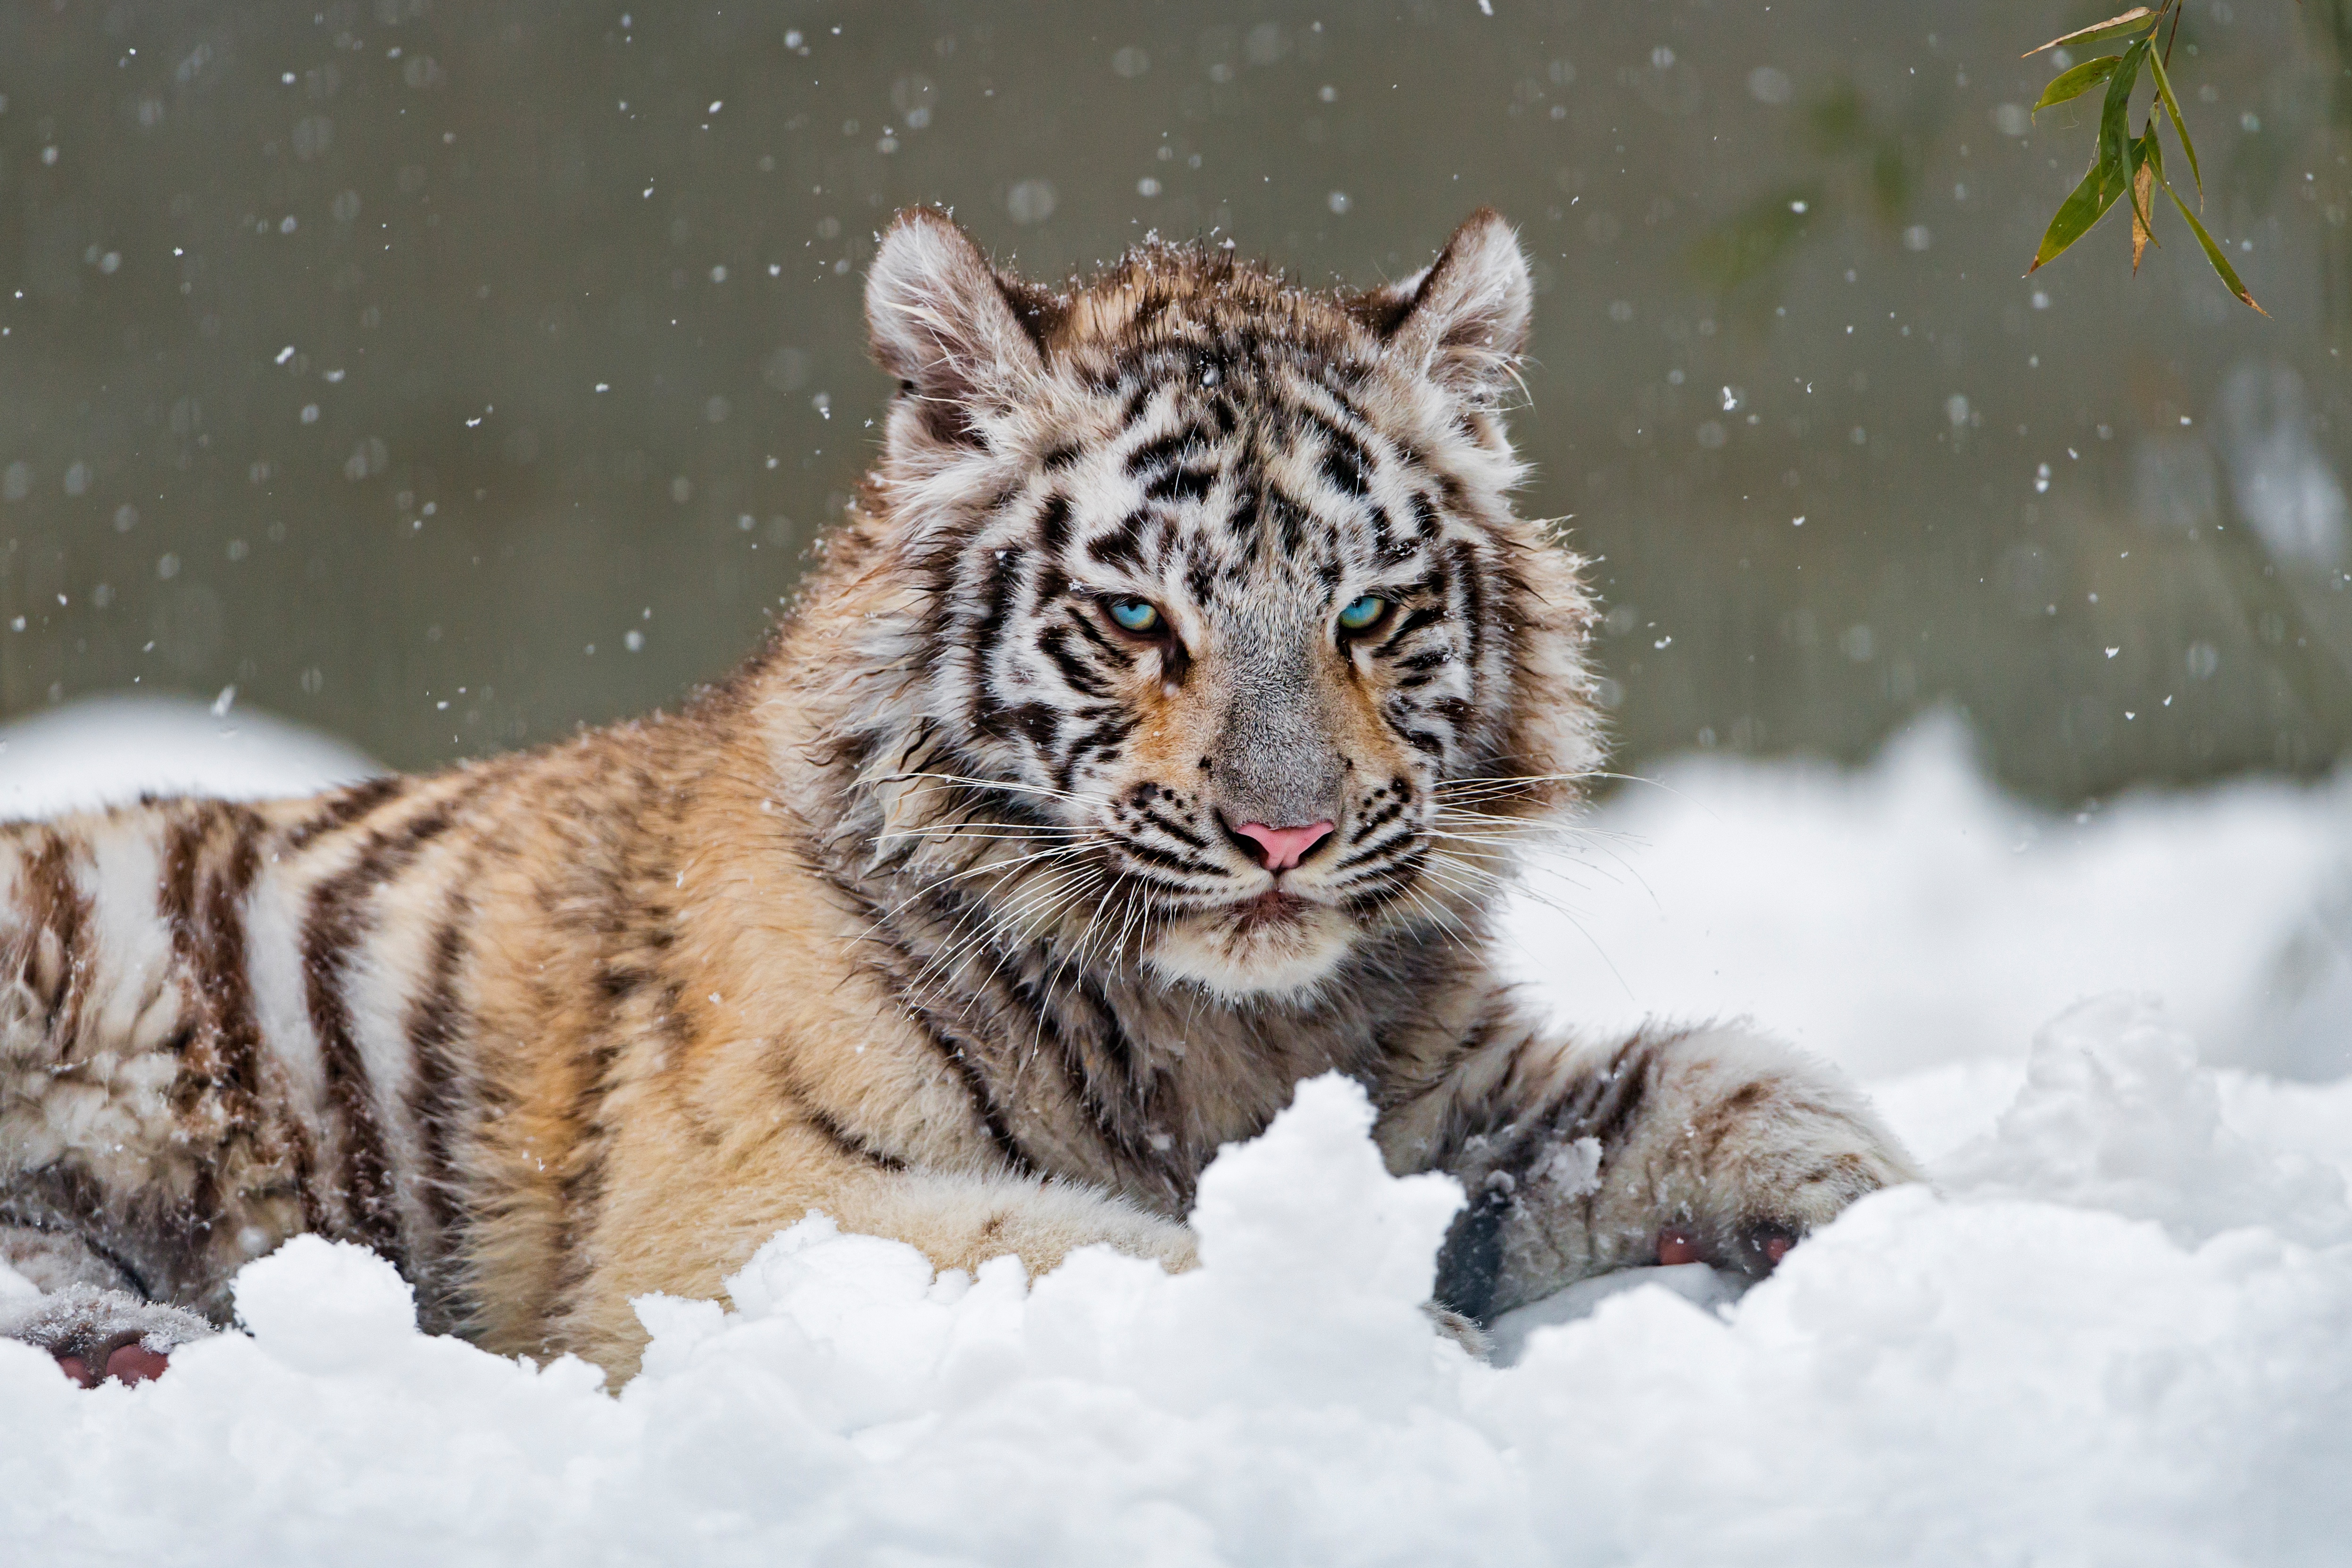 Скачать обои бесплатно Животные, Зима, Снег, Тигр, Белый Тигр, Кошки картинка на рабочий стол ПК